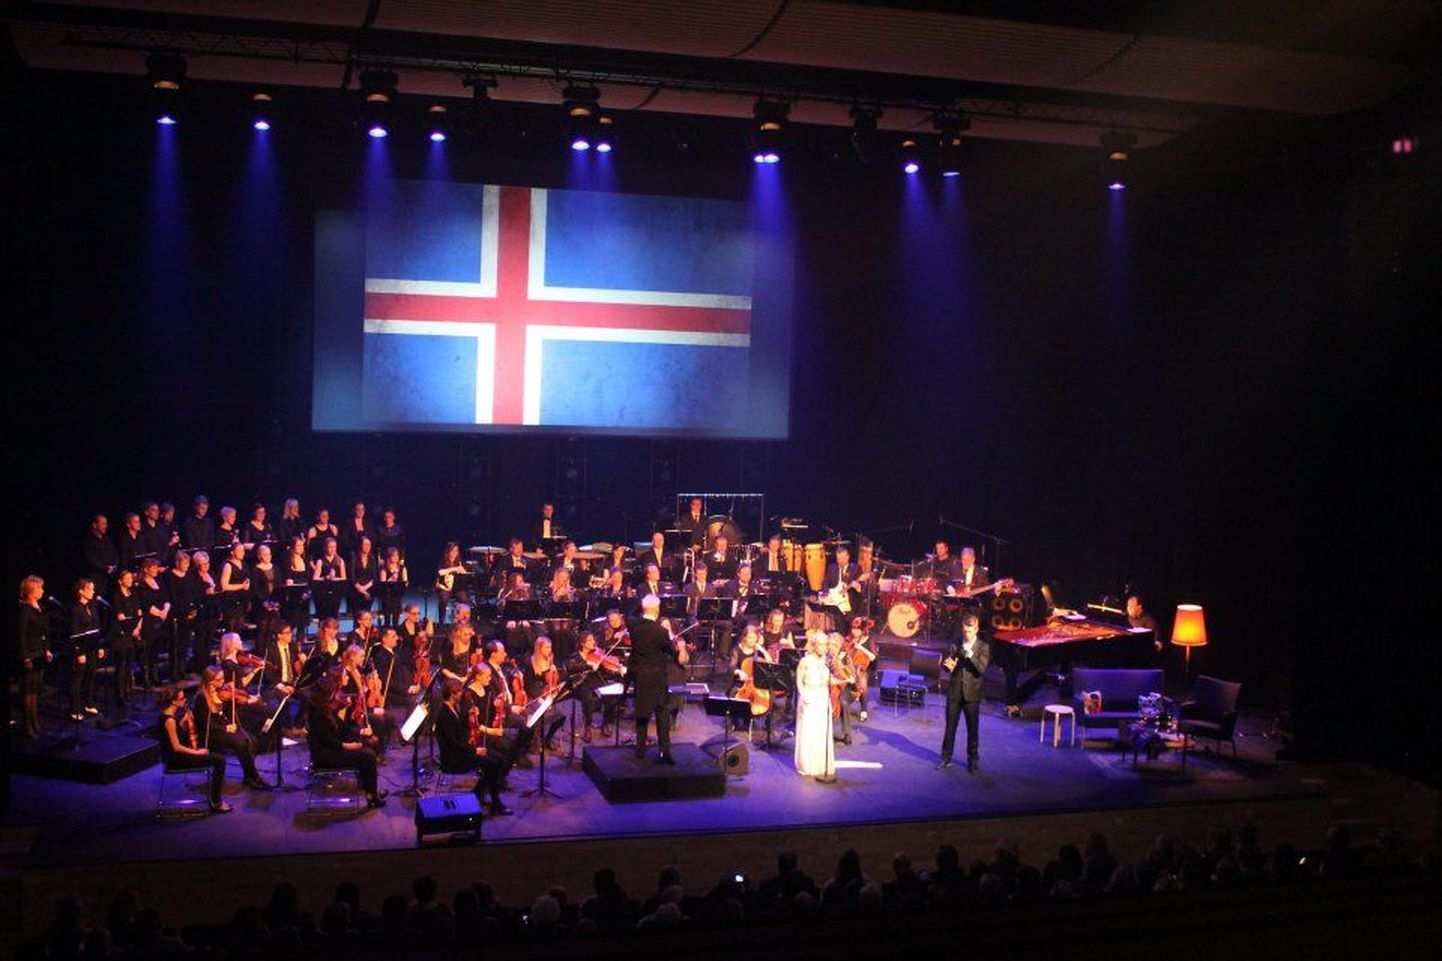 Islandil Akureyris toimunud kontsert “”Eurovisiooni” minevik ja olevik” osutus saarerahva seas ülimenukaks. Kontserdil kõlanud eurolaulude seaded tegi pärnakas Mati Põdra.